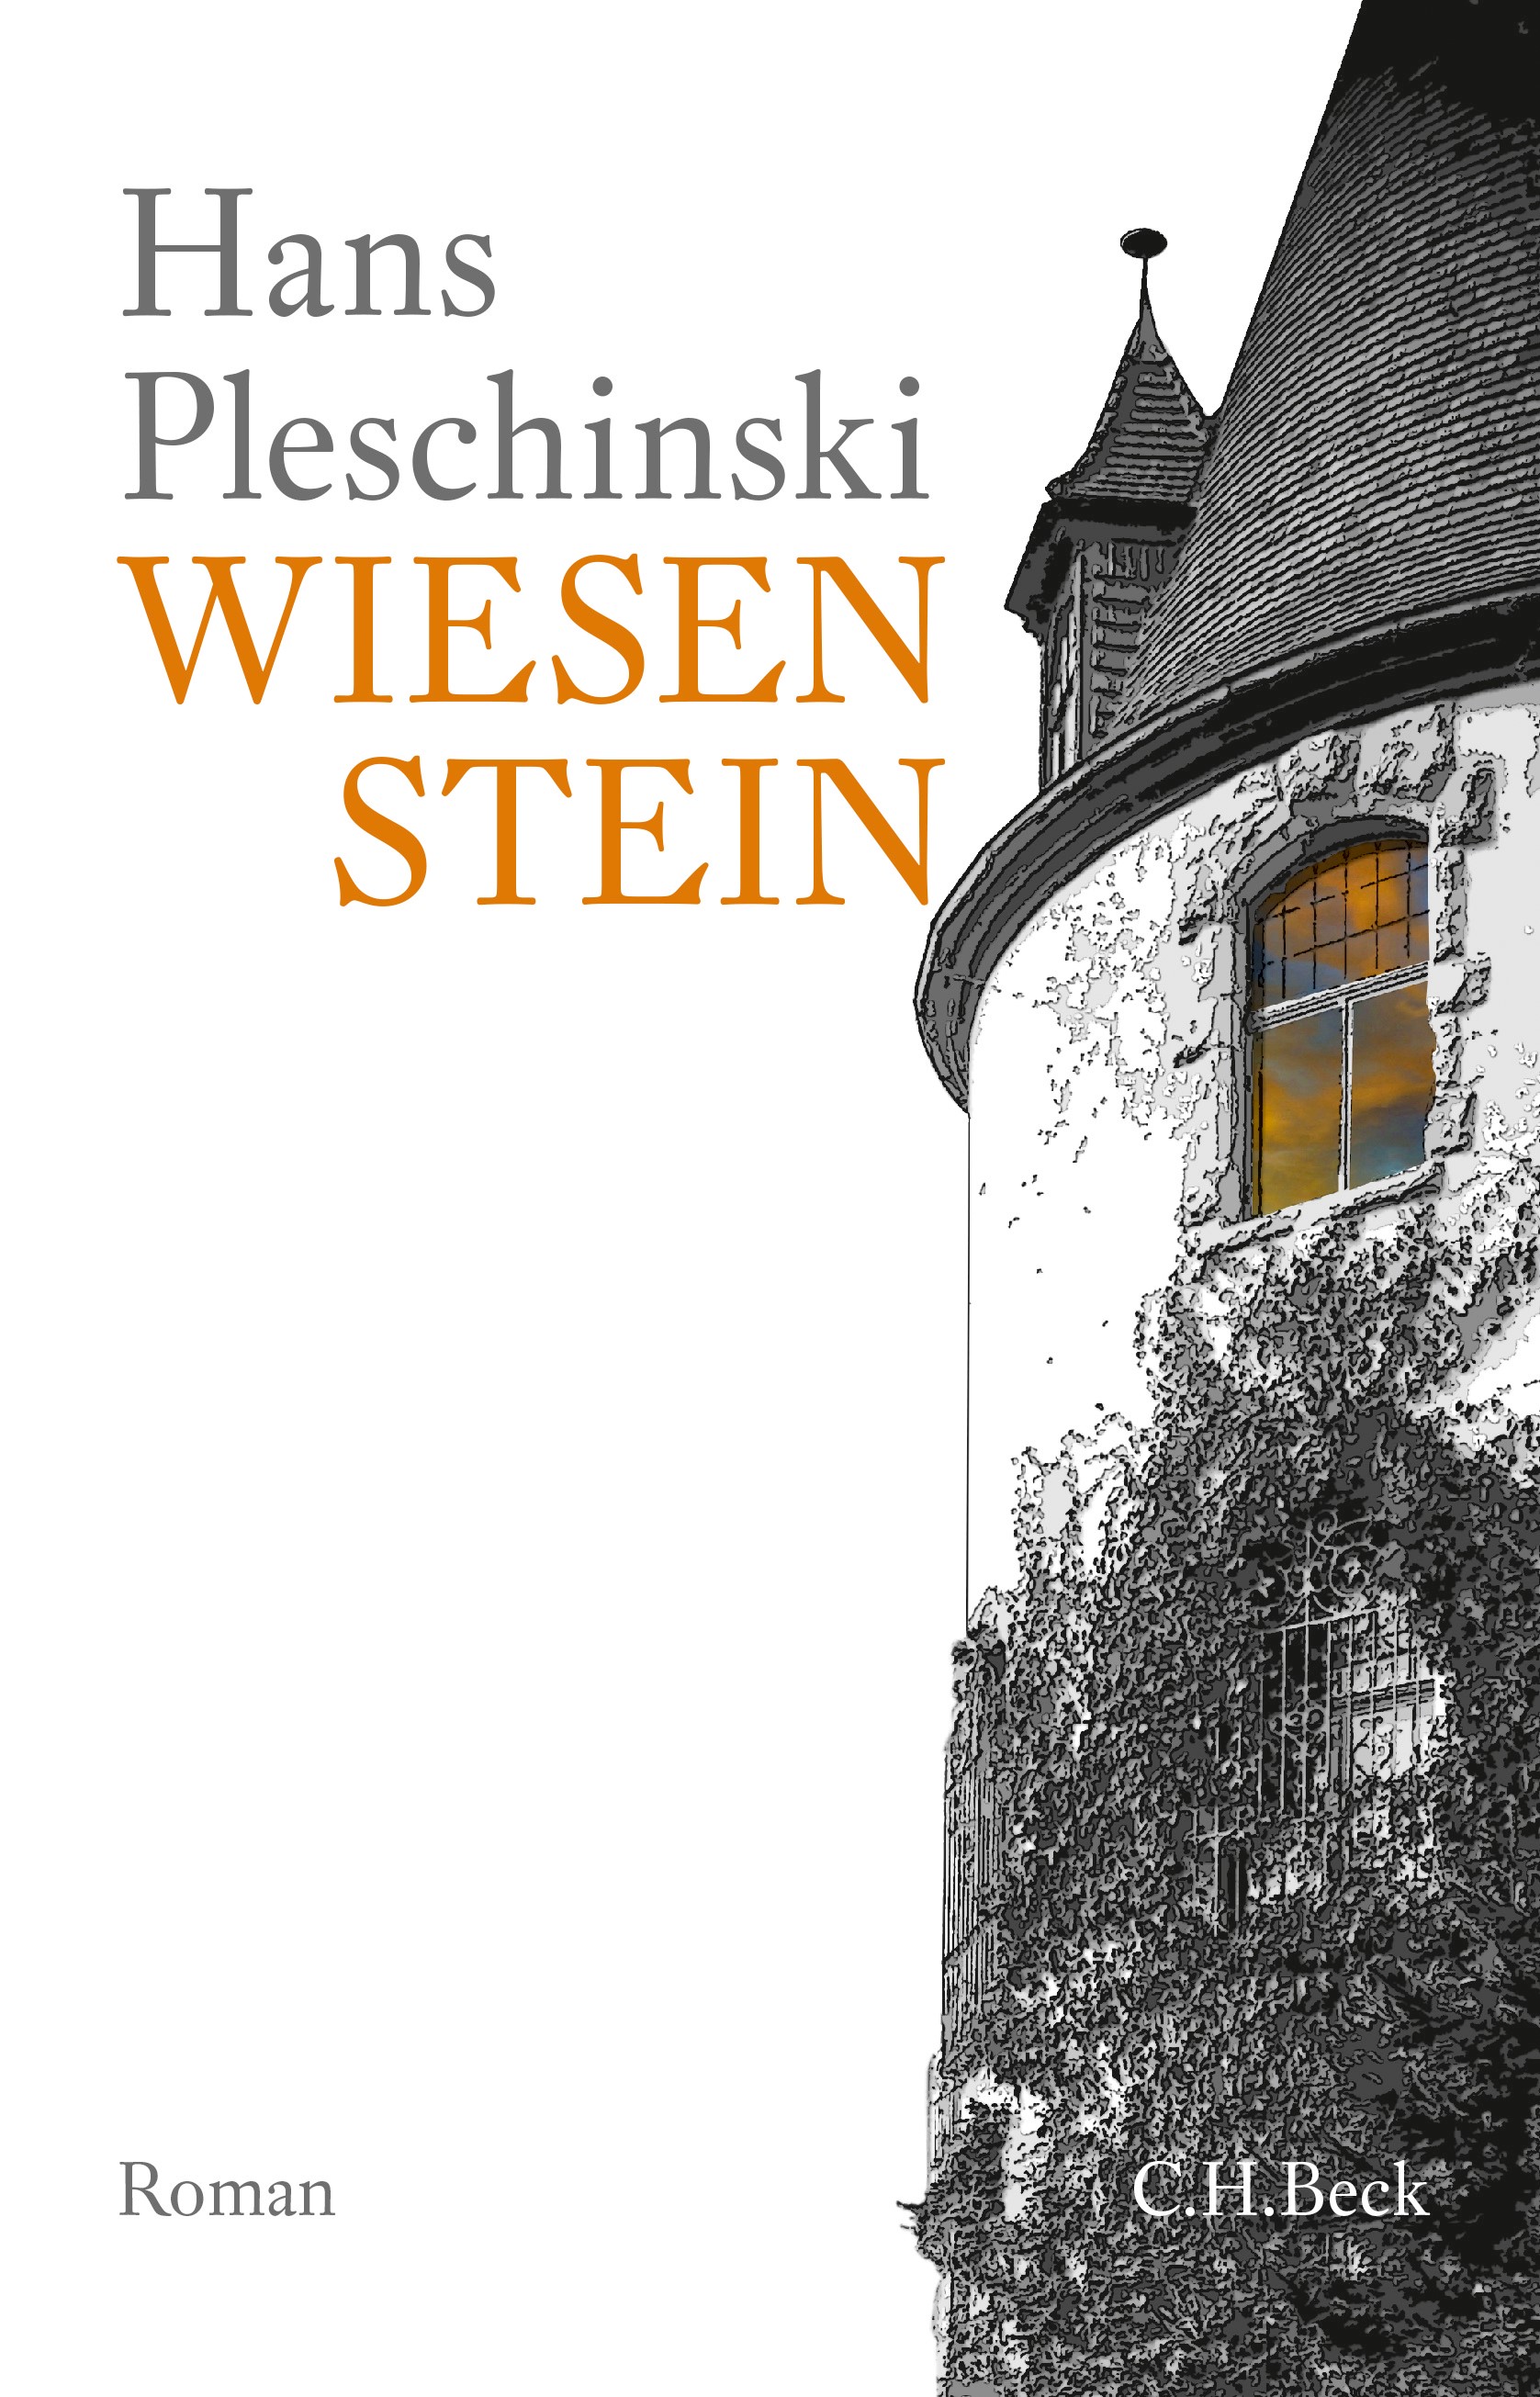 Cover: Pleschinski, Hans, Wiesenstein